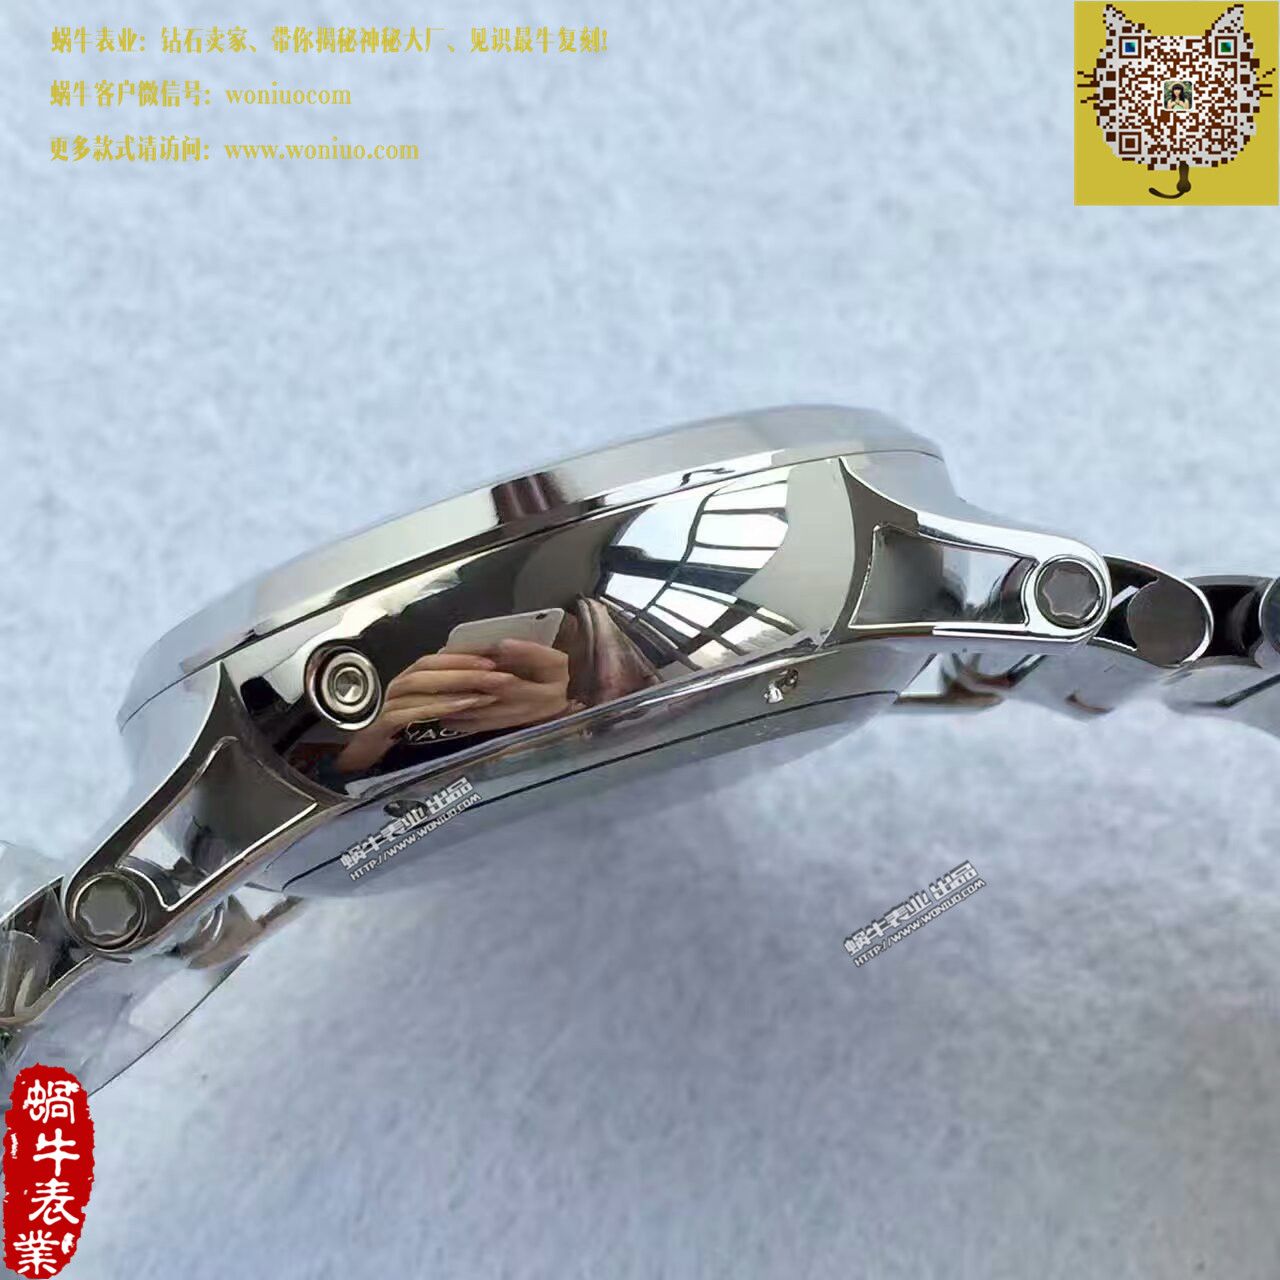 【台湾厂1比1超A高仿手表】万宝龙时光行者系列U0101548腕表 / MB009